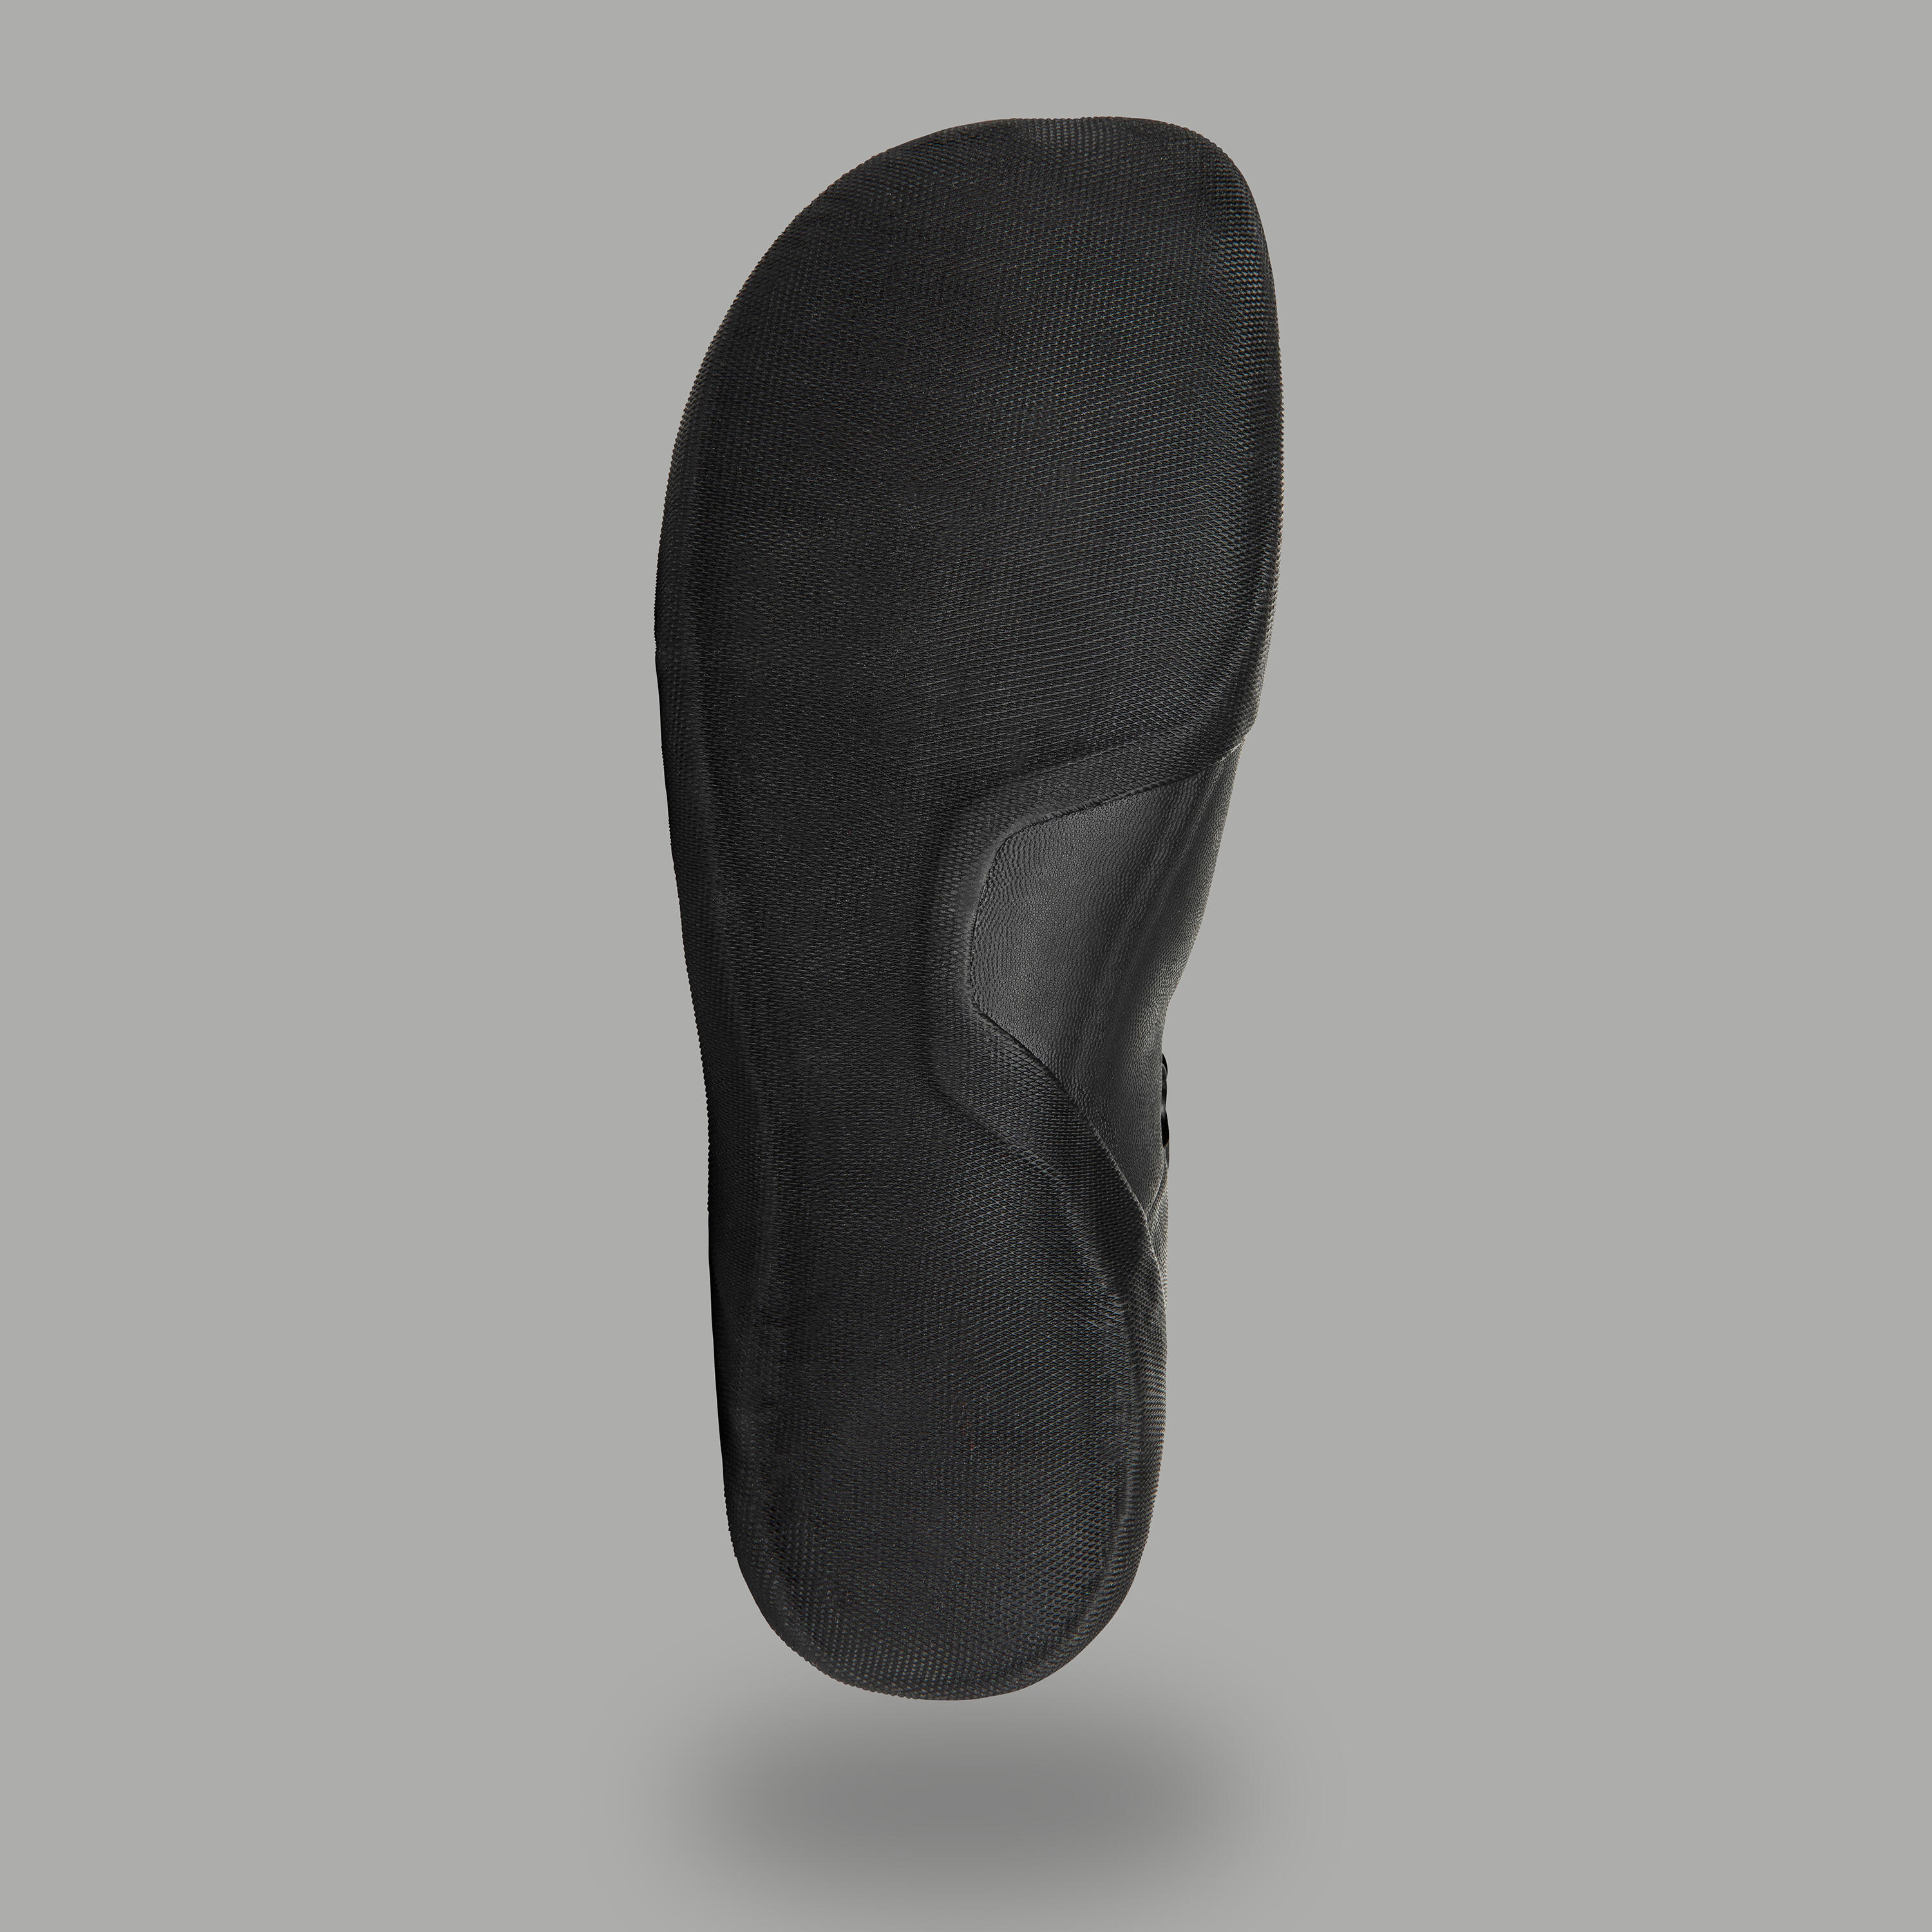 Quiksilver surfing boots 5mm neoprene - Black 8/8